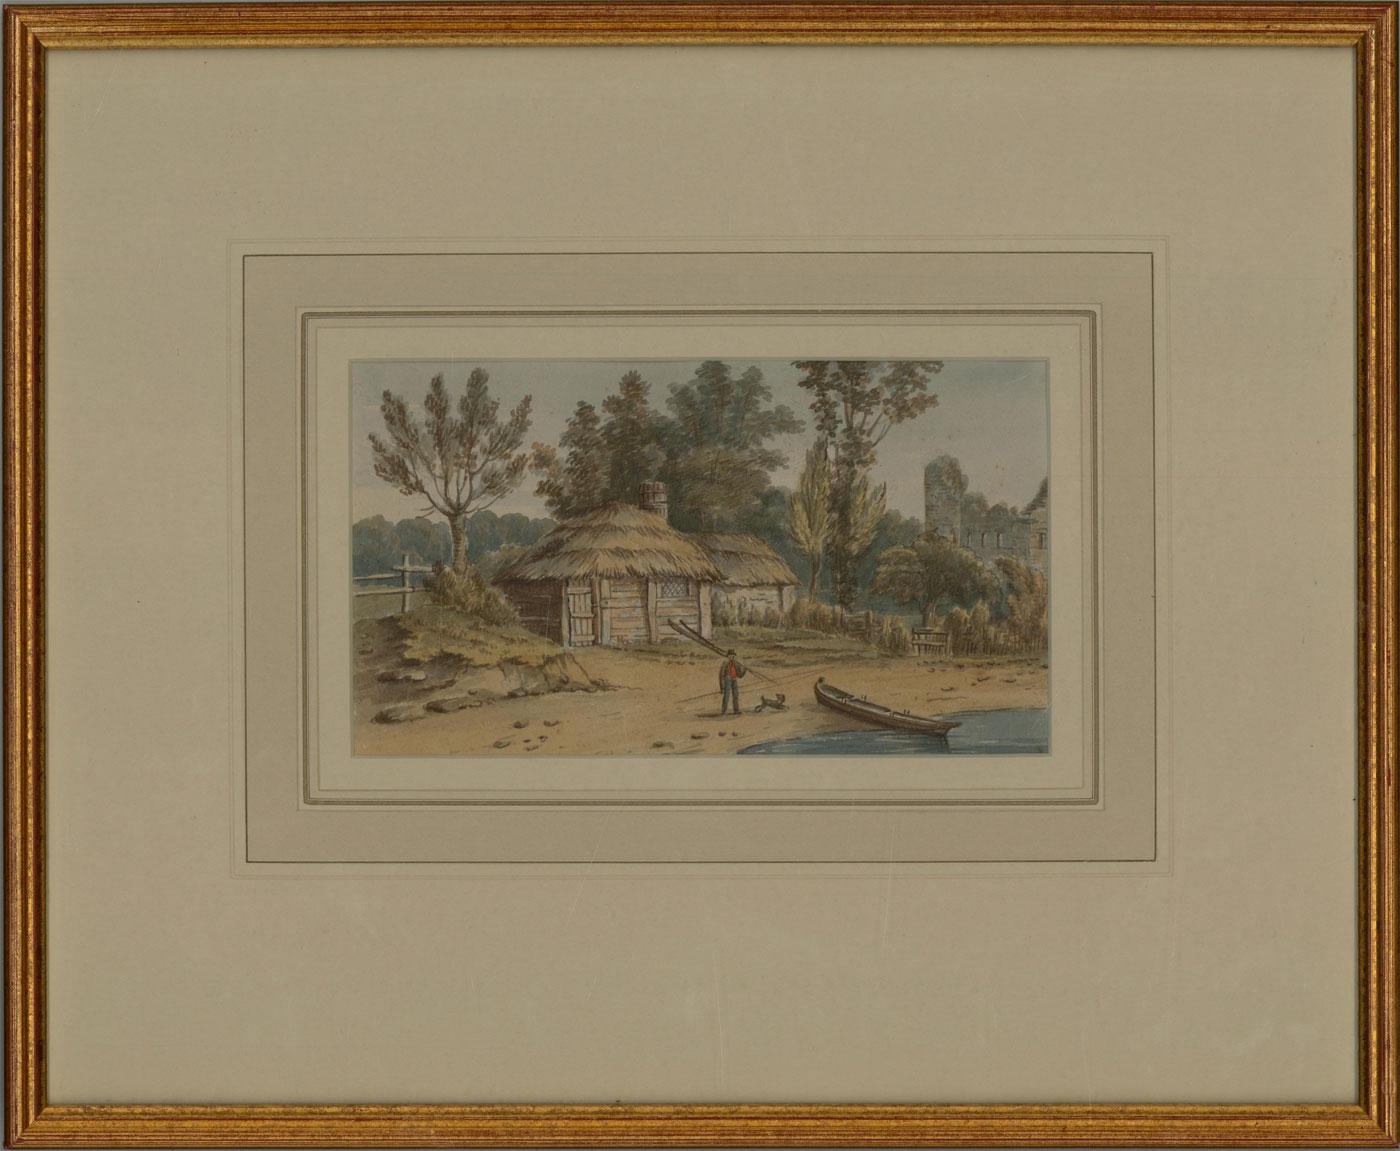 Ascribed to Gideon Yates Landscape Art – Aquarell, Gideon Yates zugeschrieben, 1824, in der Nähe von Kingsland Castle